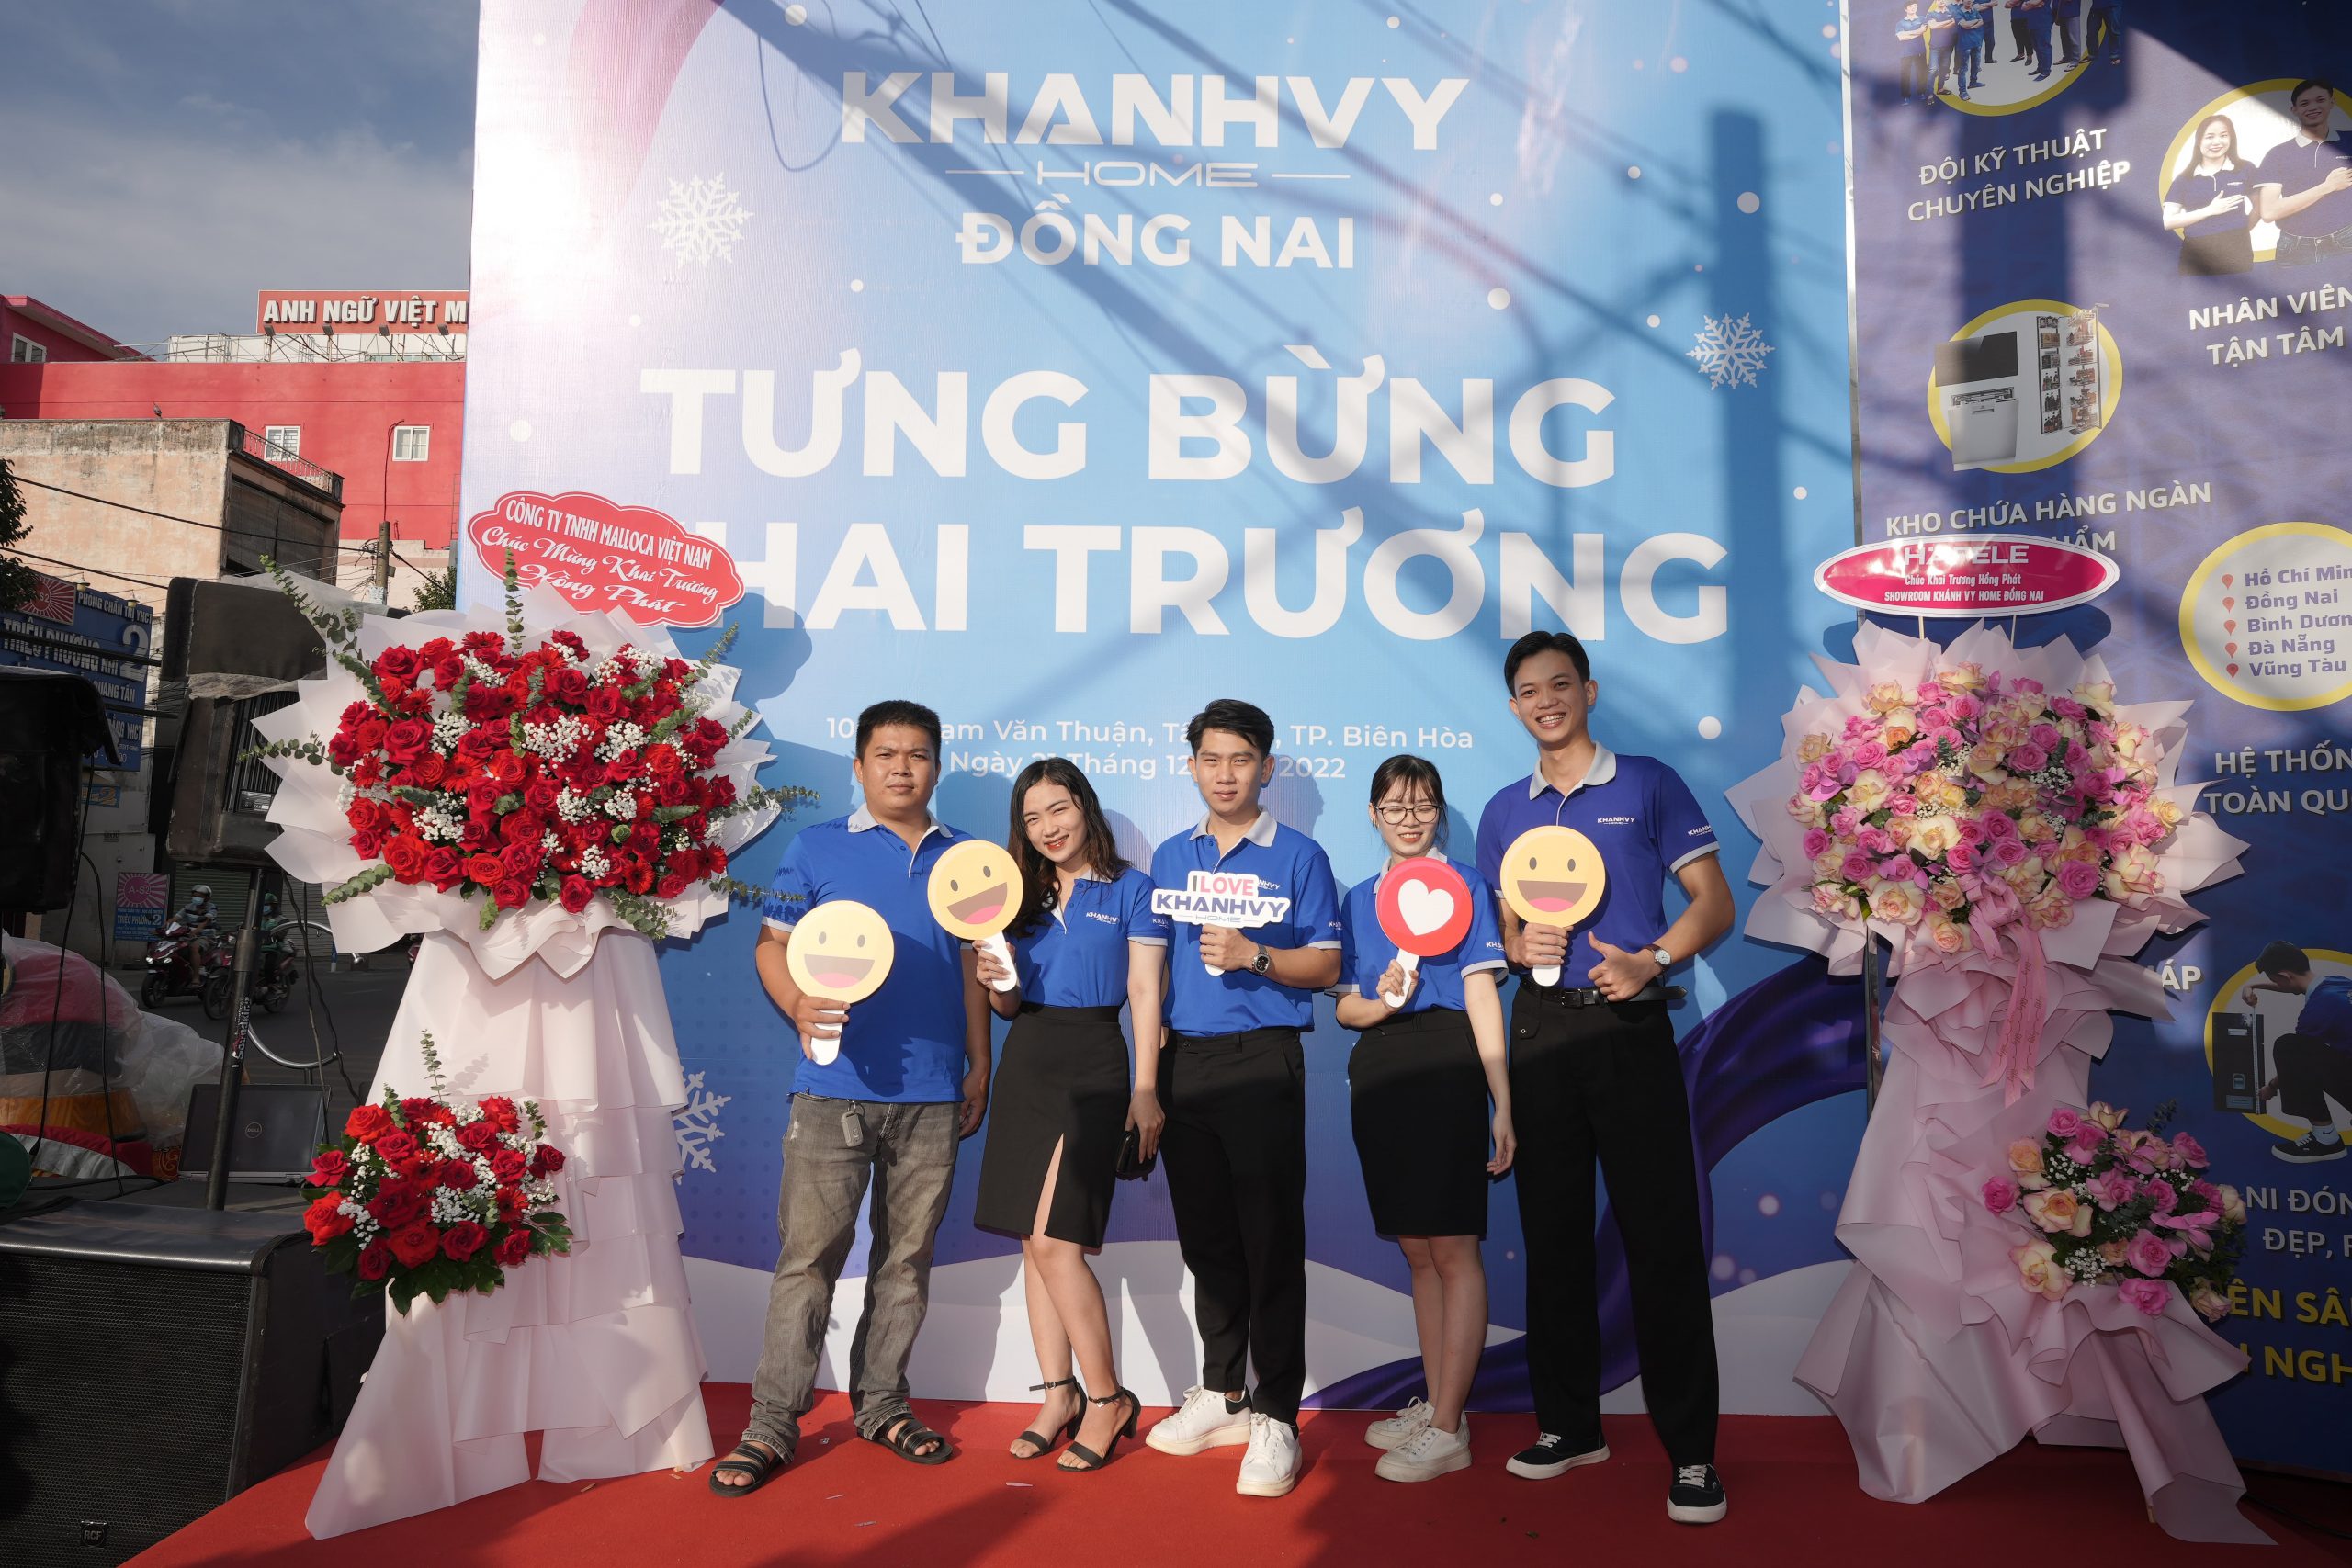 Sự kiện khai trương showroom Khánh Vy Home tại Đồng Nai vừa qua